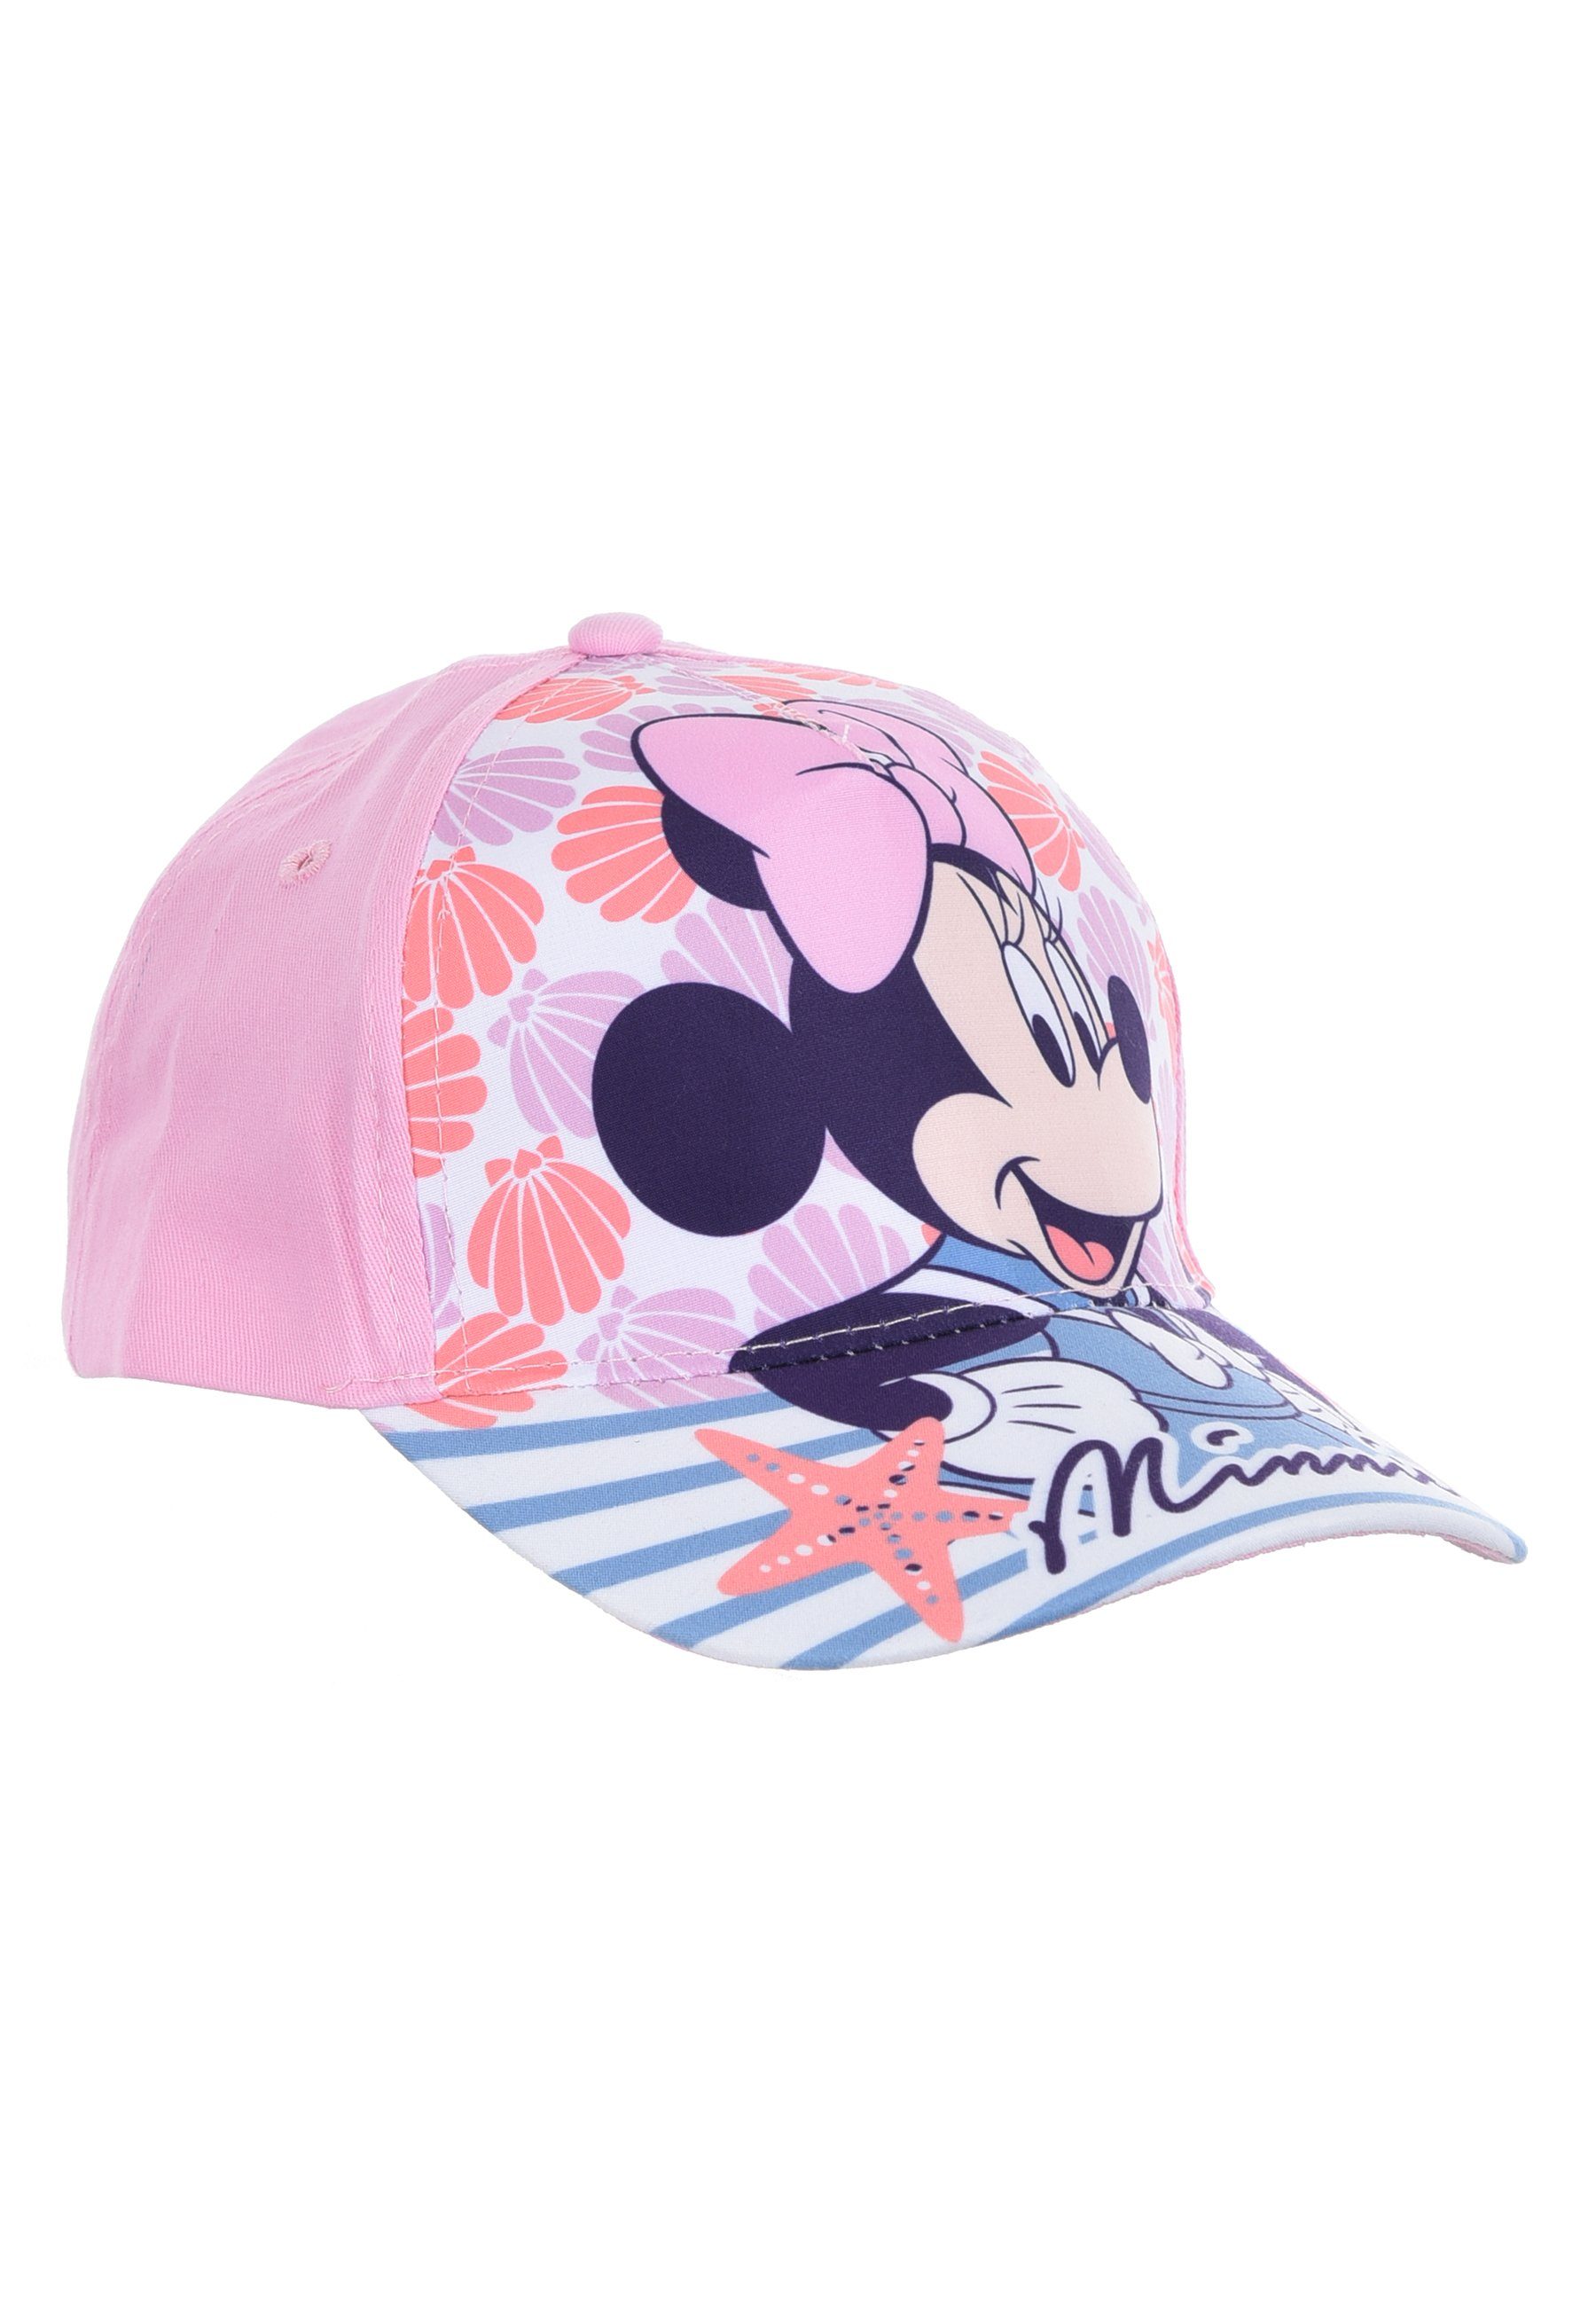 Disney Minnie Mouse Baseball Cap Kappe Mütze Rosa